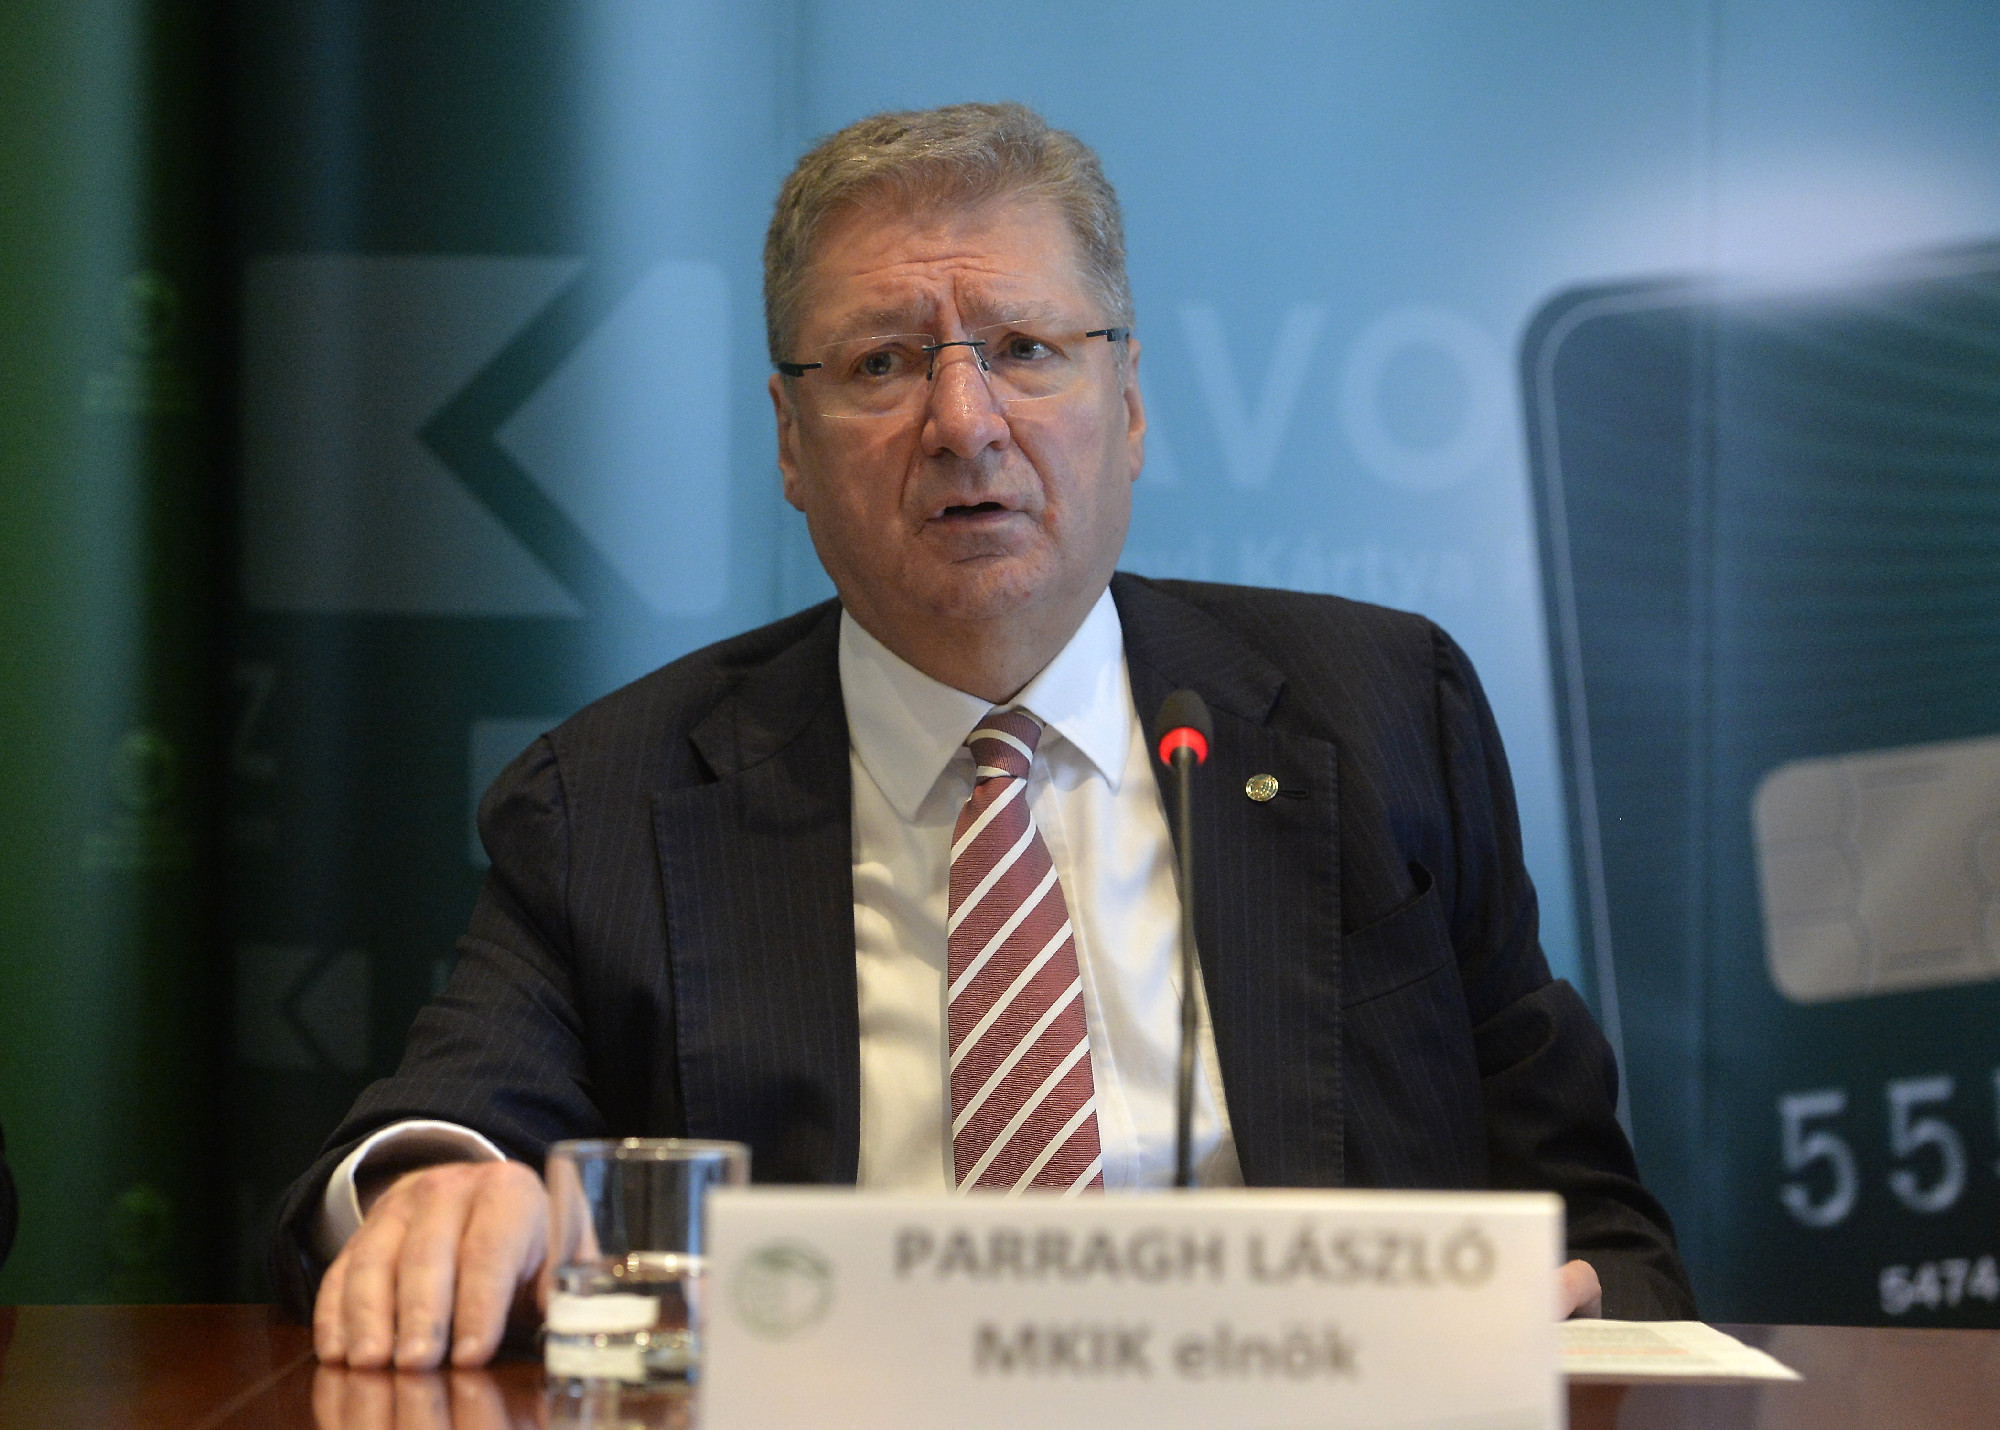 Parragh Lászlót bírálja a budapesti iparkamara